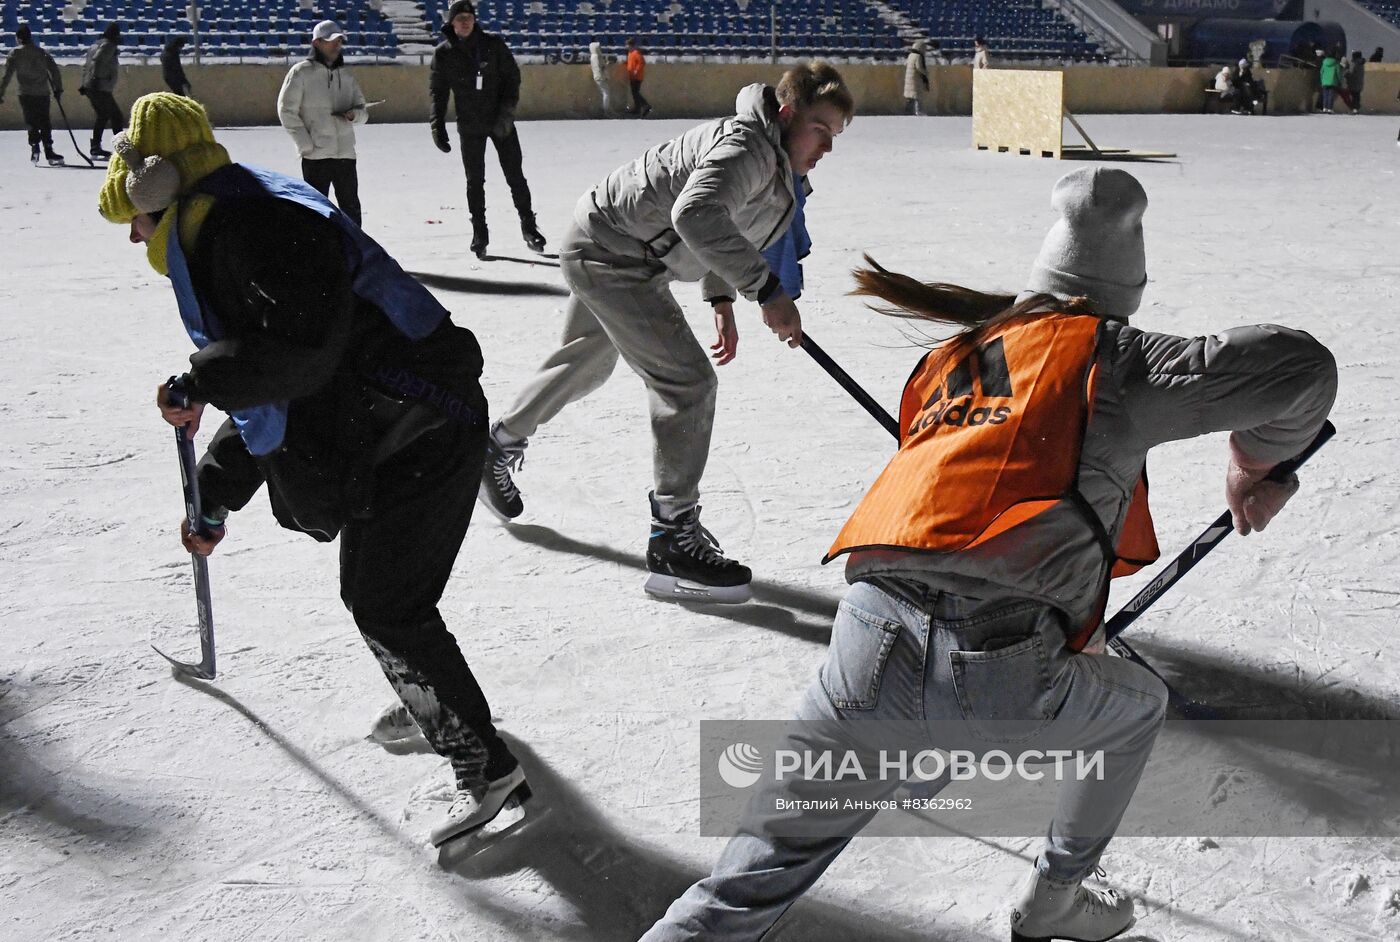 Фестиваль "Студенческая спортивная ночь" во Владивостоке